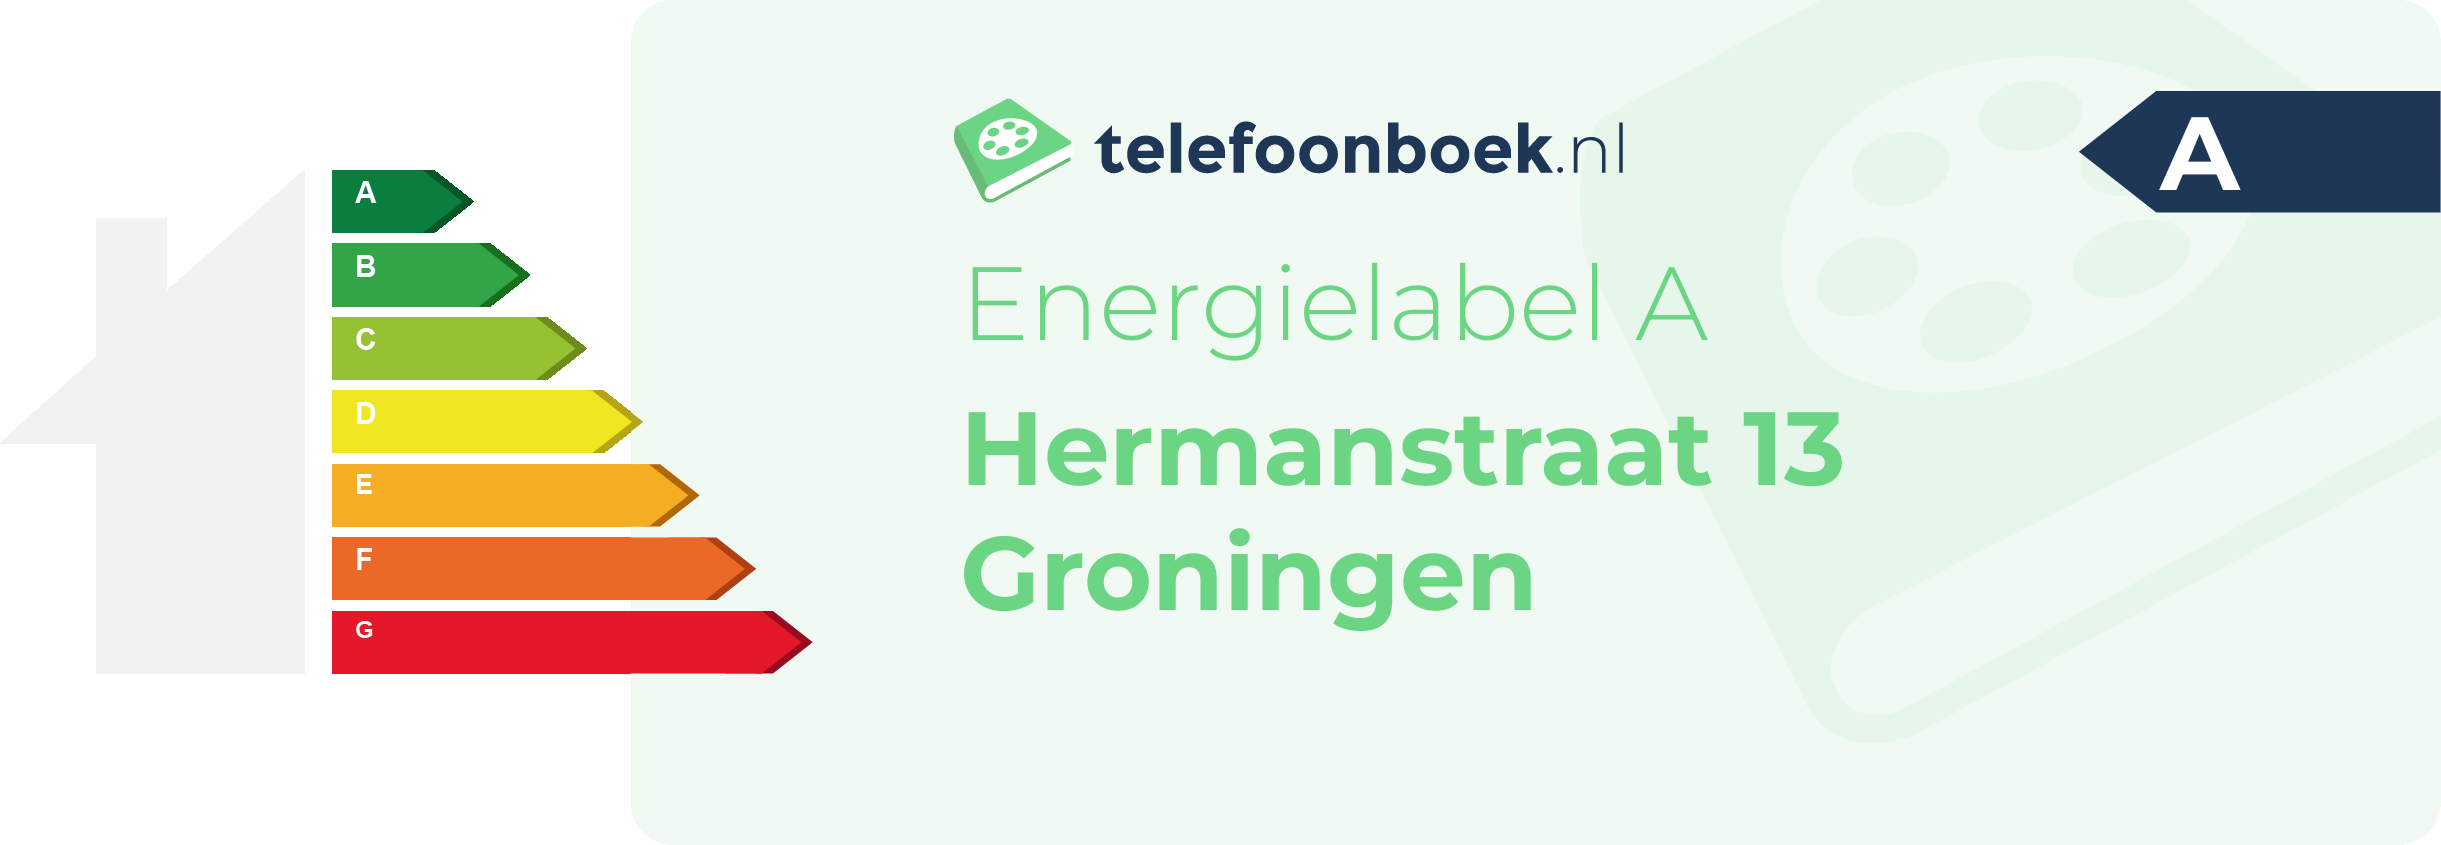 Energielabel Hermanstraat 13 Groningen